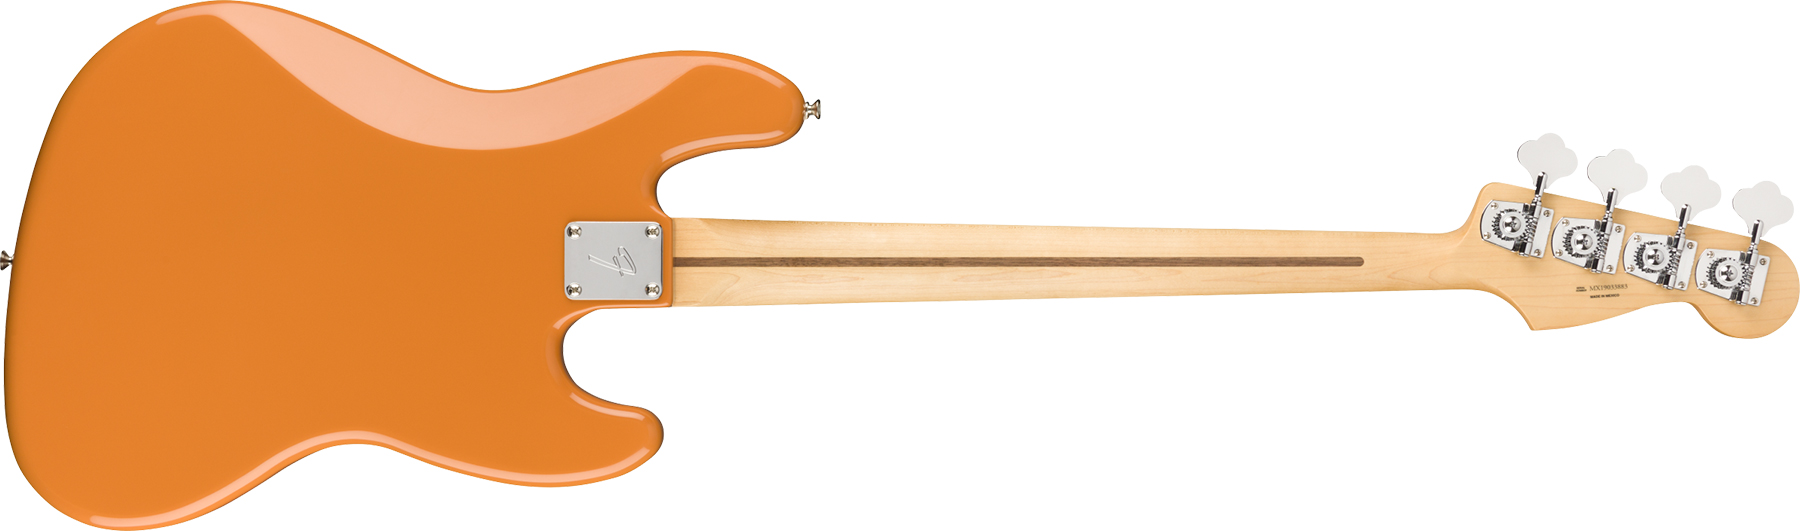 Fender Jazz Bass Player Lh Gaucher Mex Pf - Capri Orange - Solidbody E-bass - Variation 1